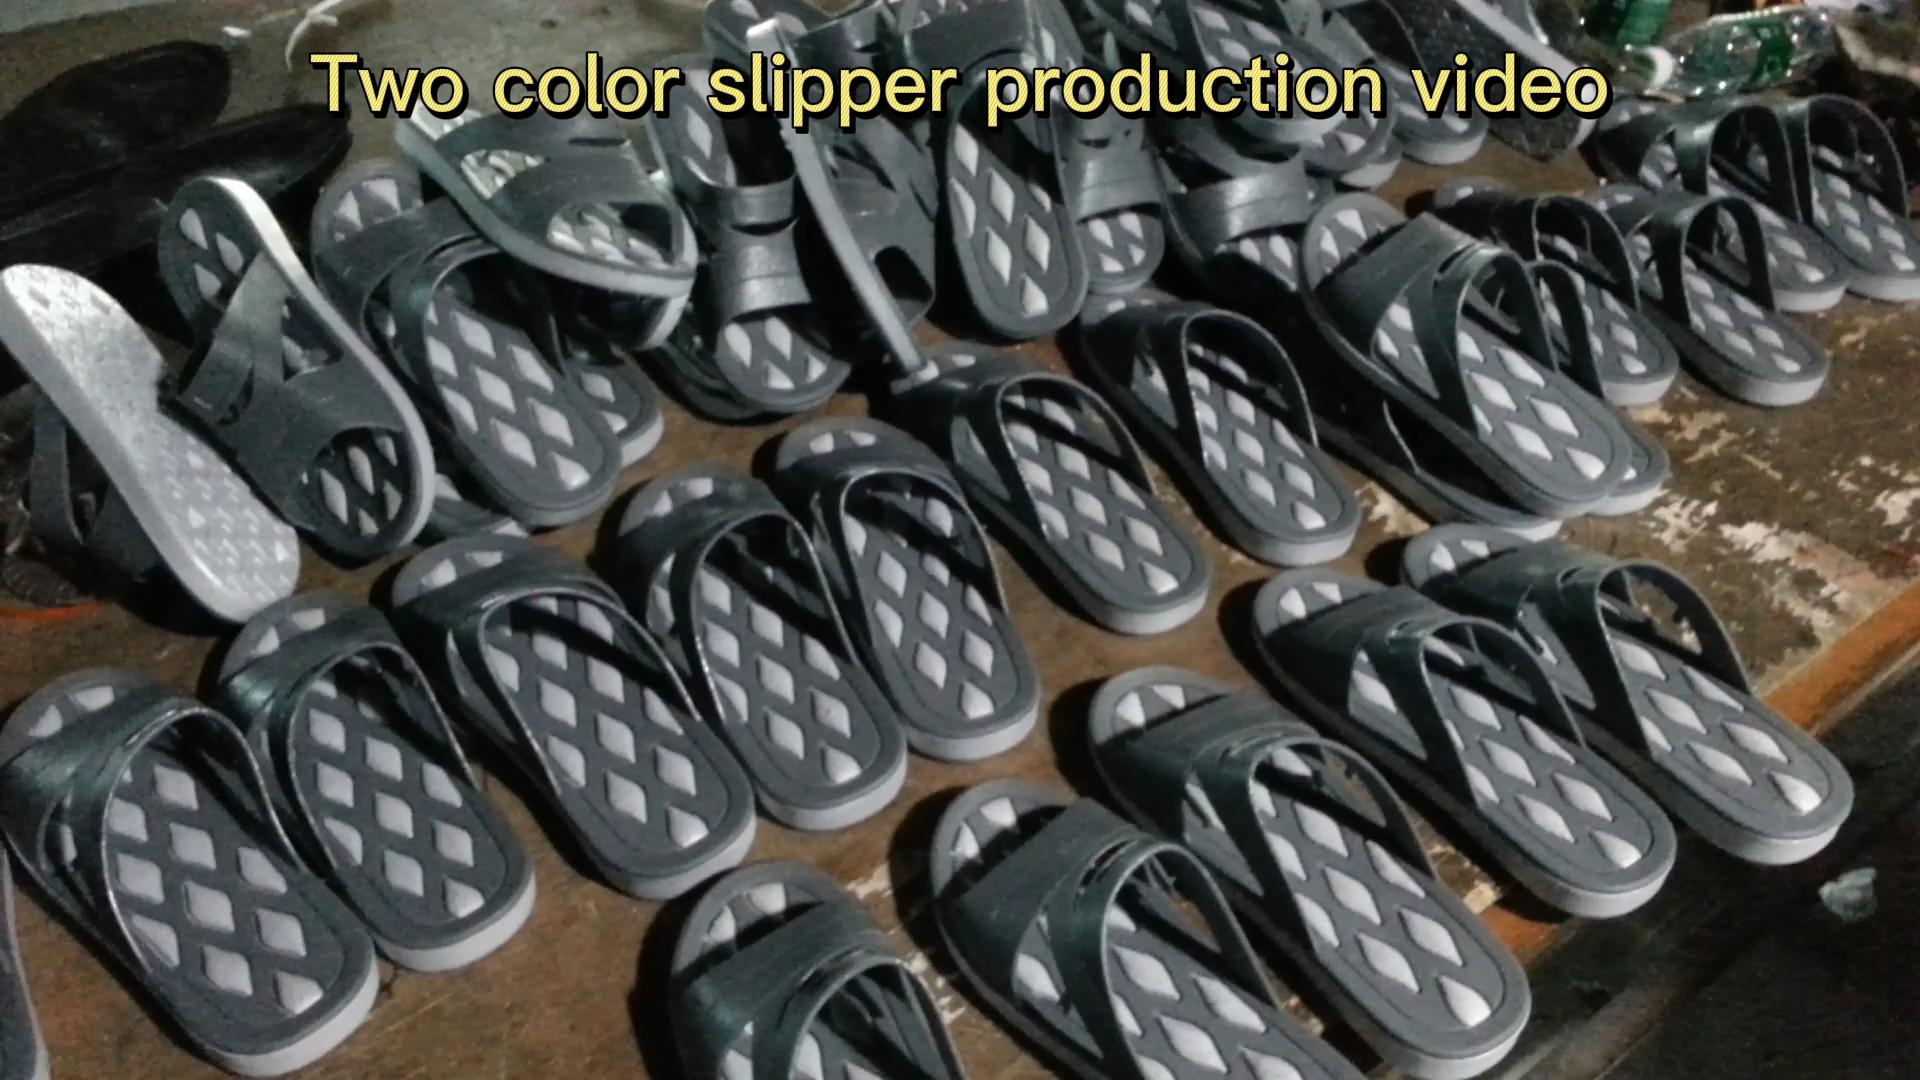 Dois vídeos de produção de chinelo de cor